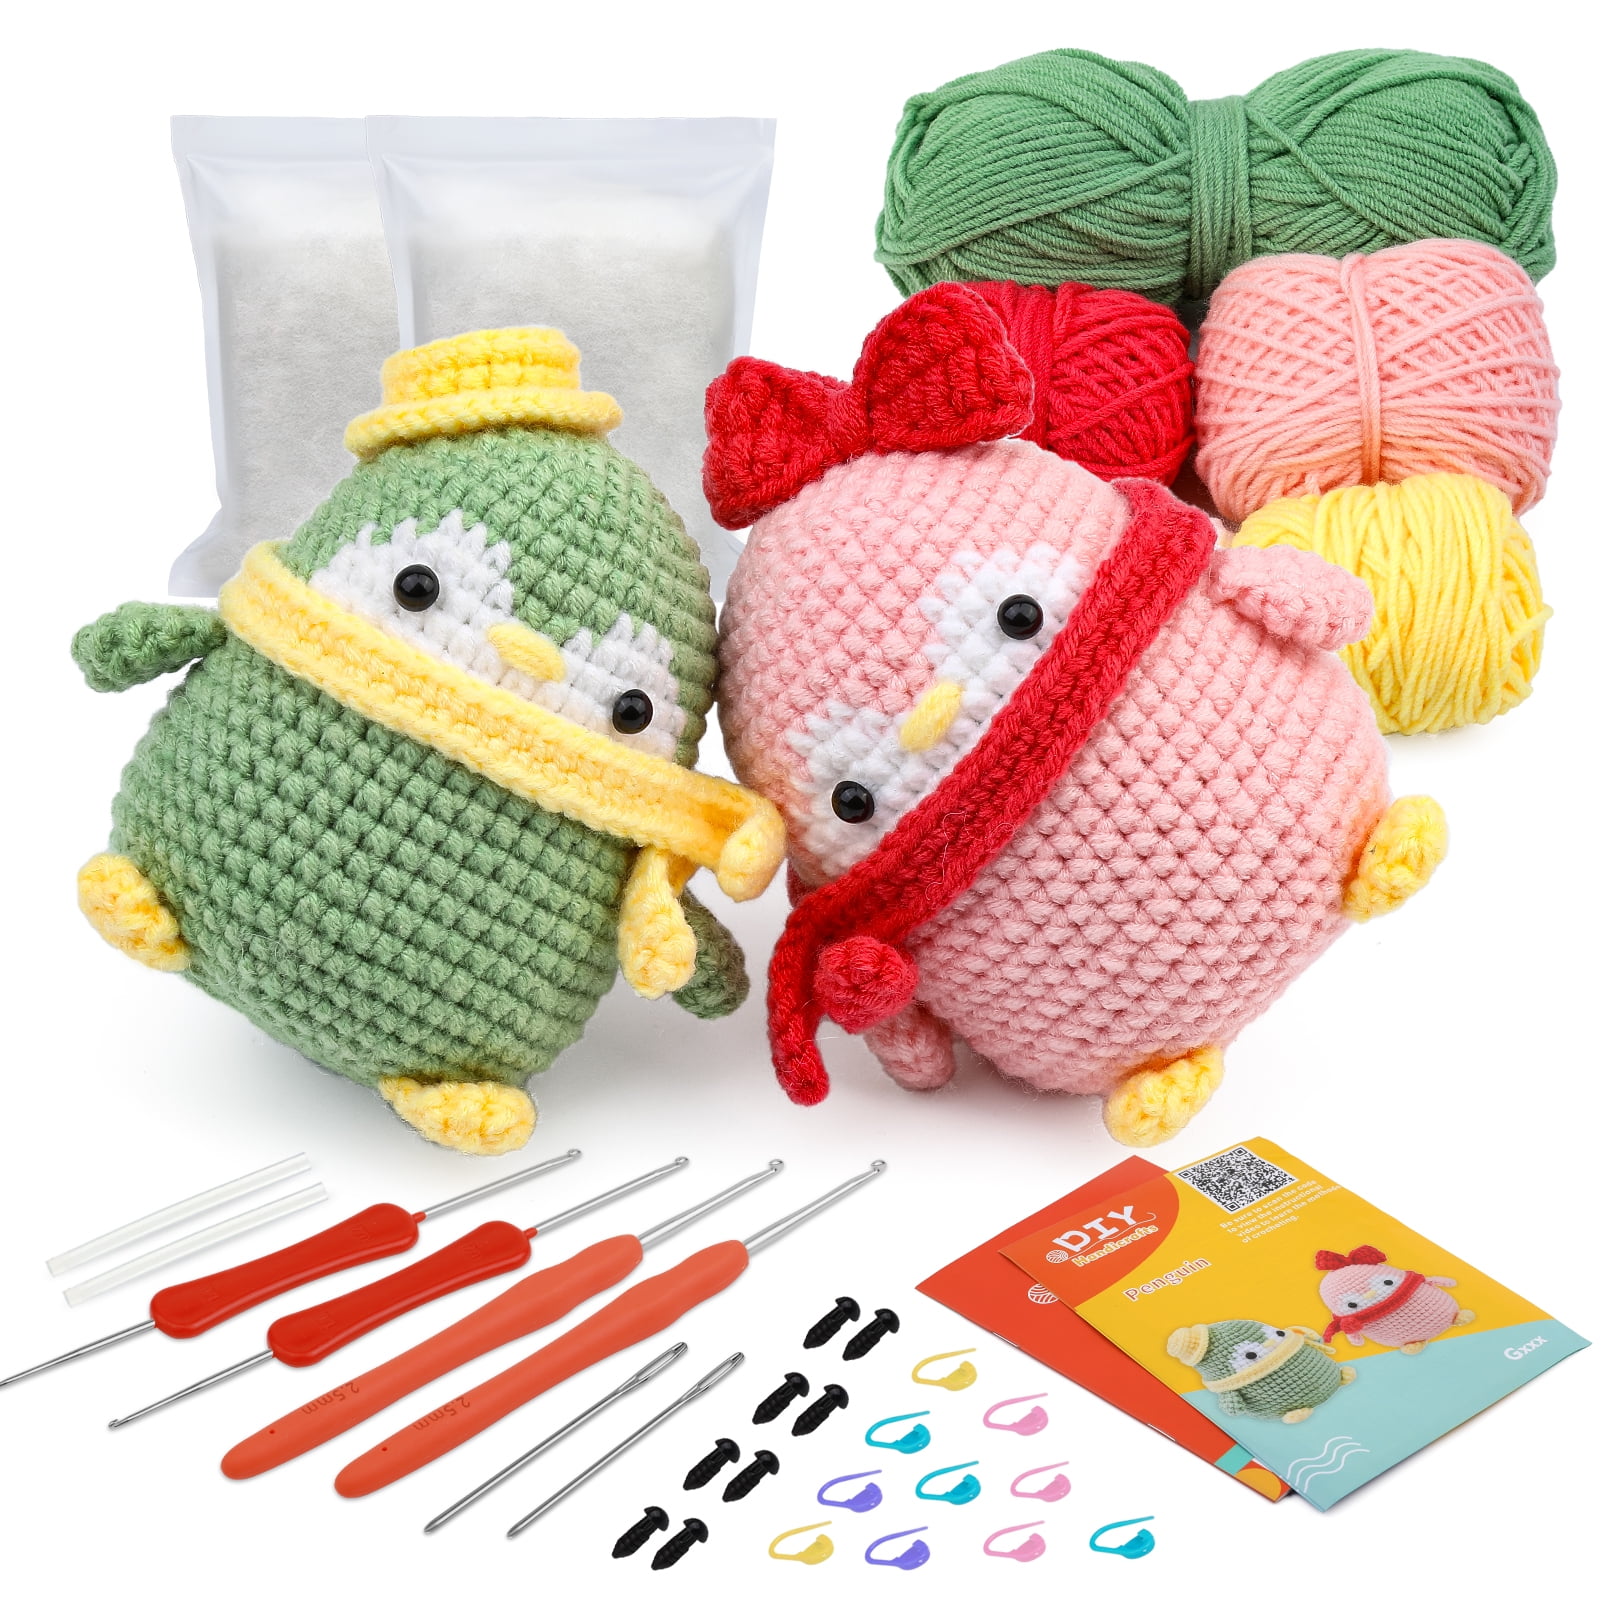 Daover Crochet Kit for Beginners - Set of 2 Dinosaur Crochet Kit for  Adults, Beginner Crochet Starter Kit DIY All-in-One Stuffed Animal Knitting  Sets